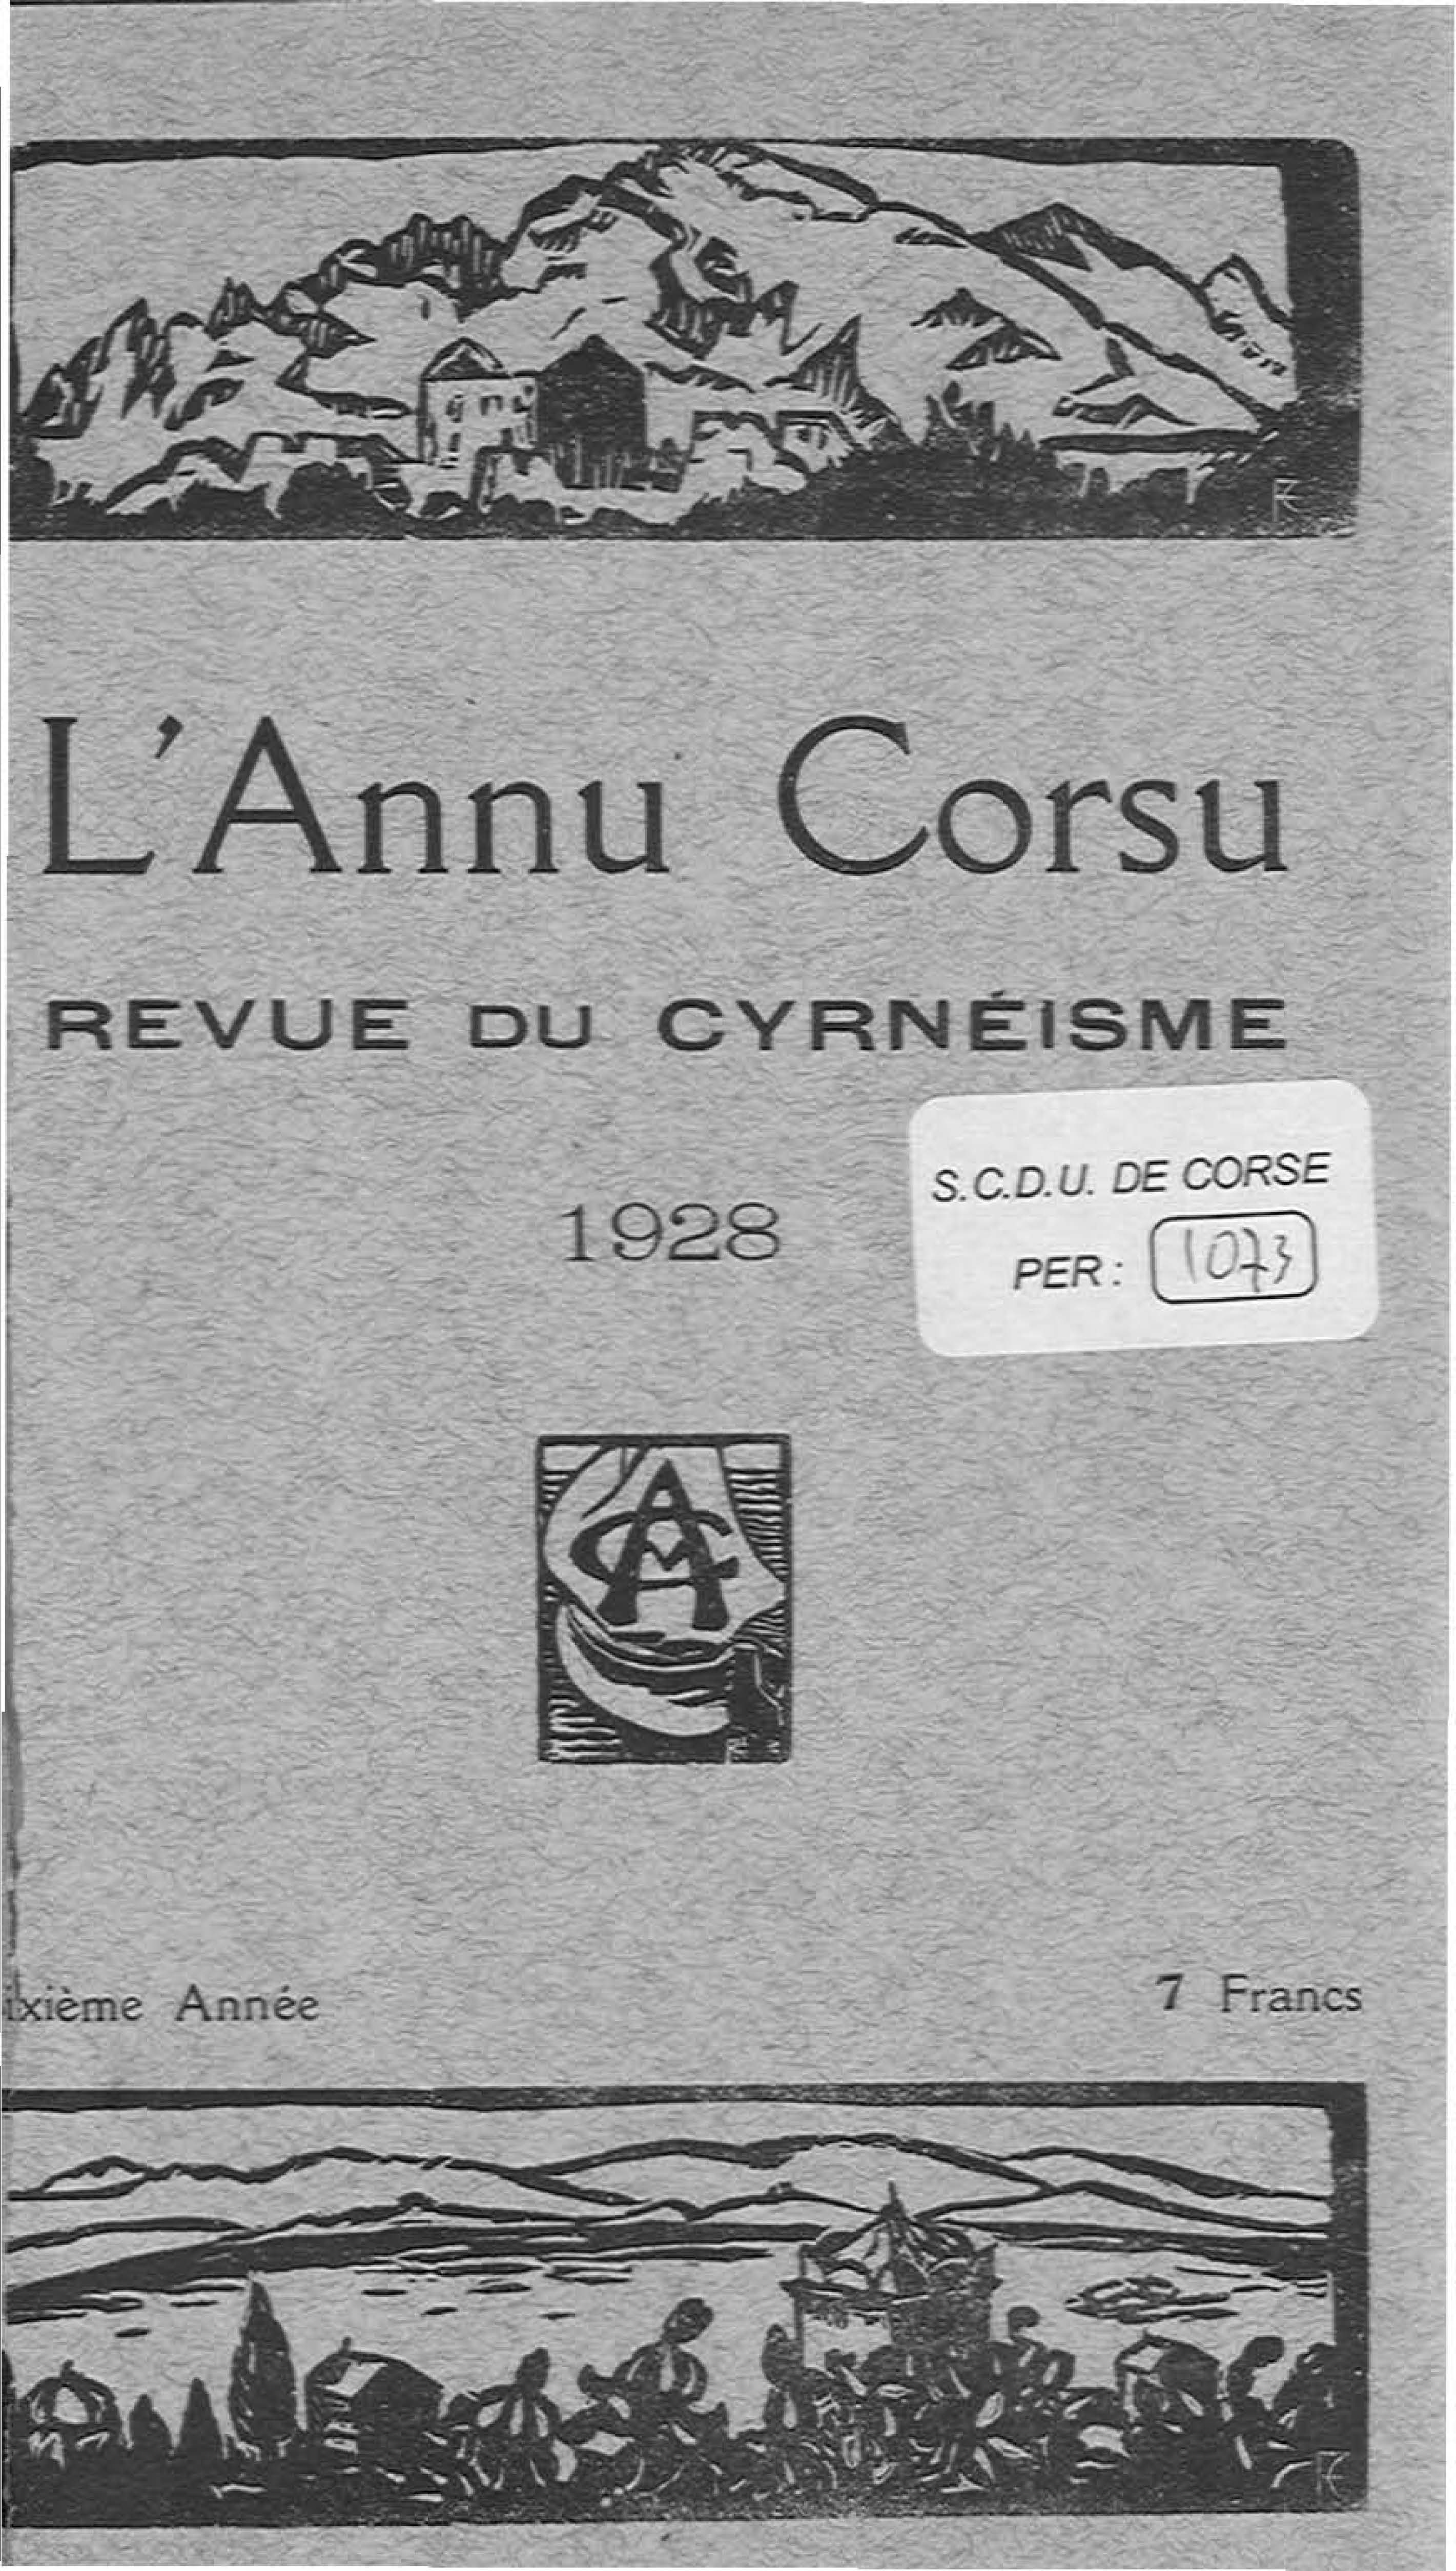 >L'Annu Corsu (1928)